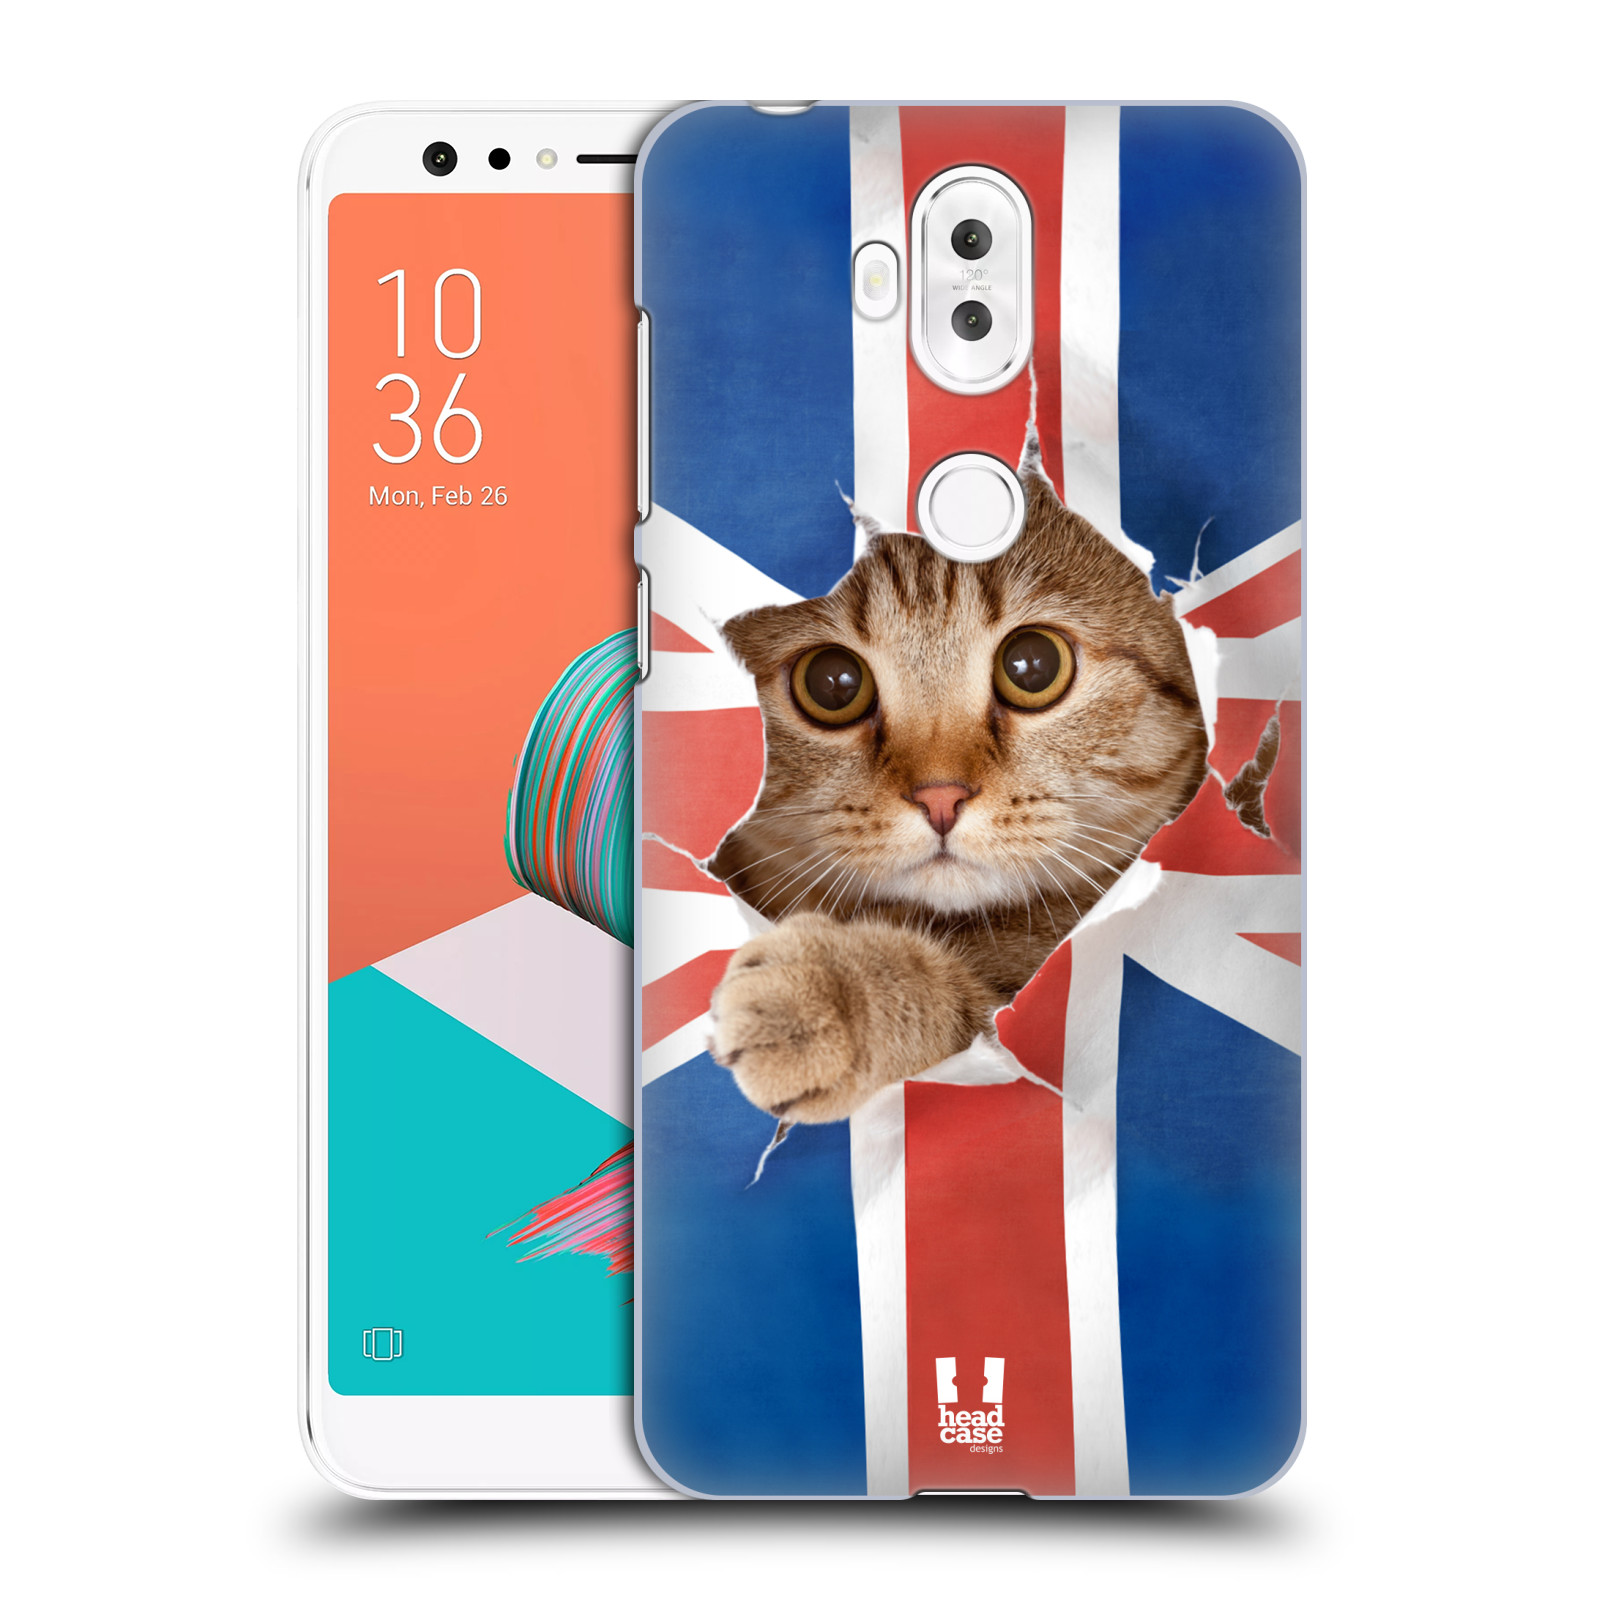 HEAD CASE plastový obal na mobil Asus Zenfone 5 LITE ZC600KL vzor Legrační zvířátka kočička a Velká Británie vlajka